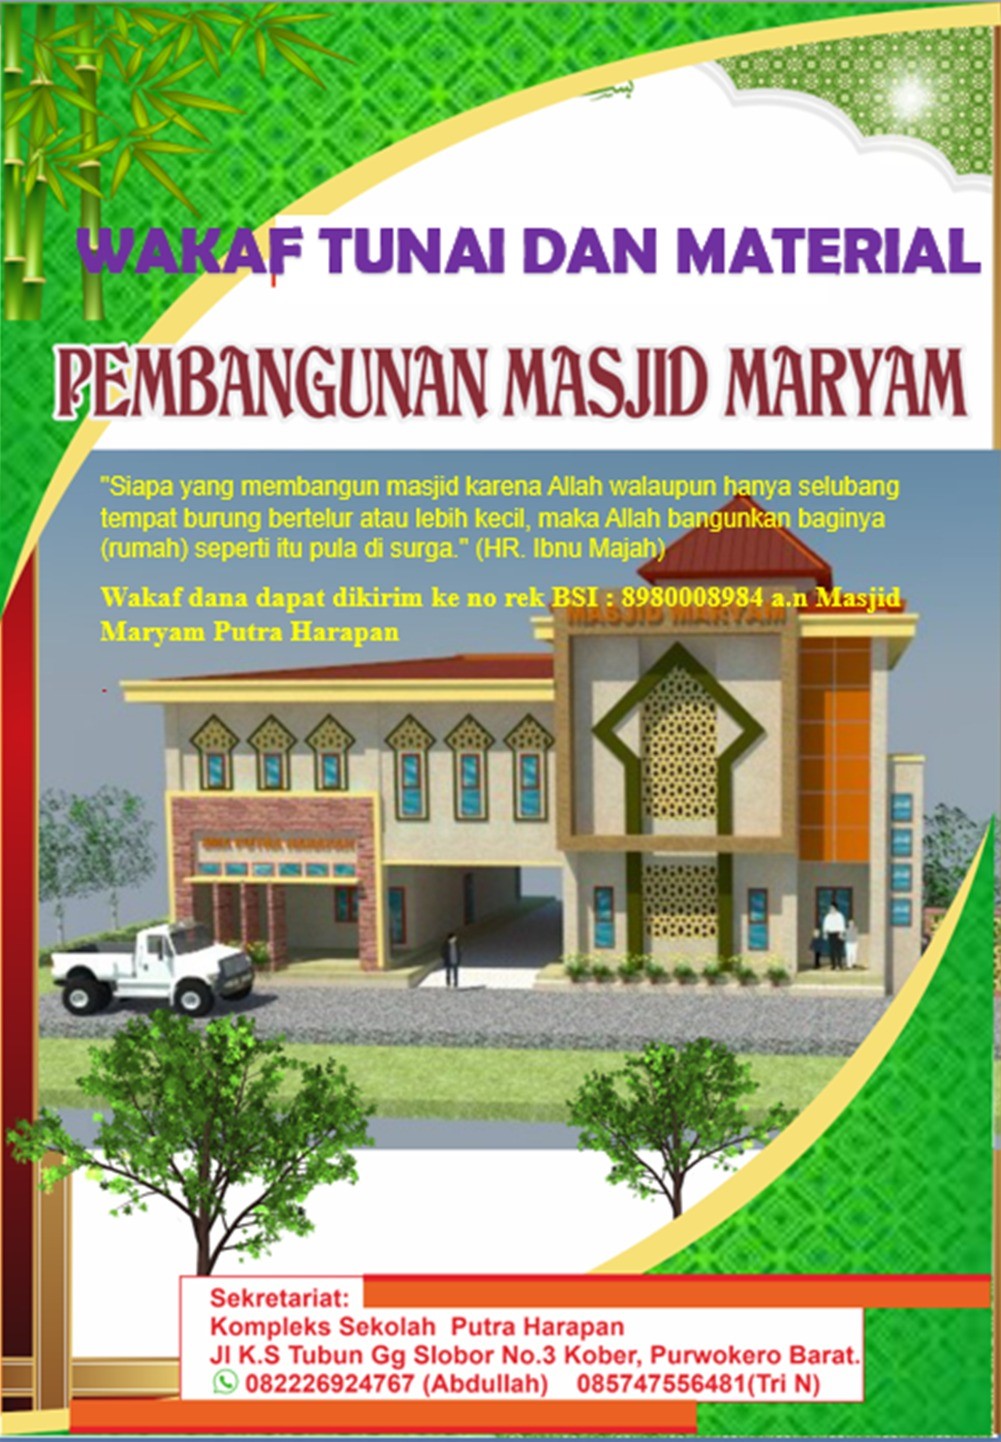 Wakaf Tunai dan Material Pembangunan Masjid Maryam